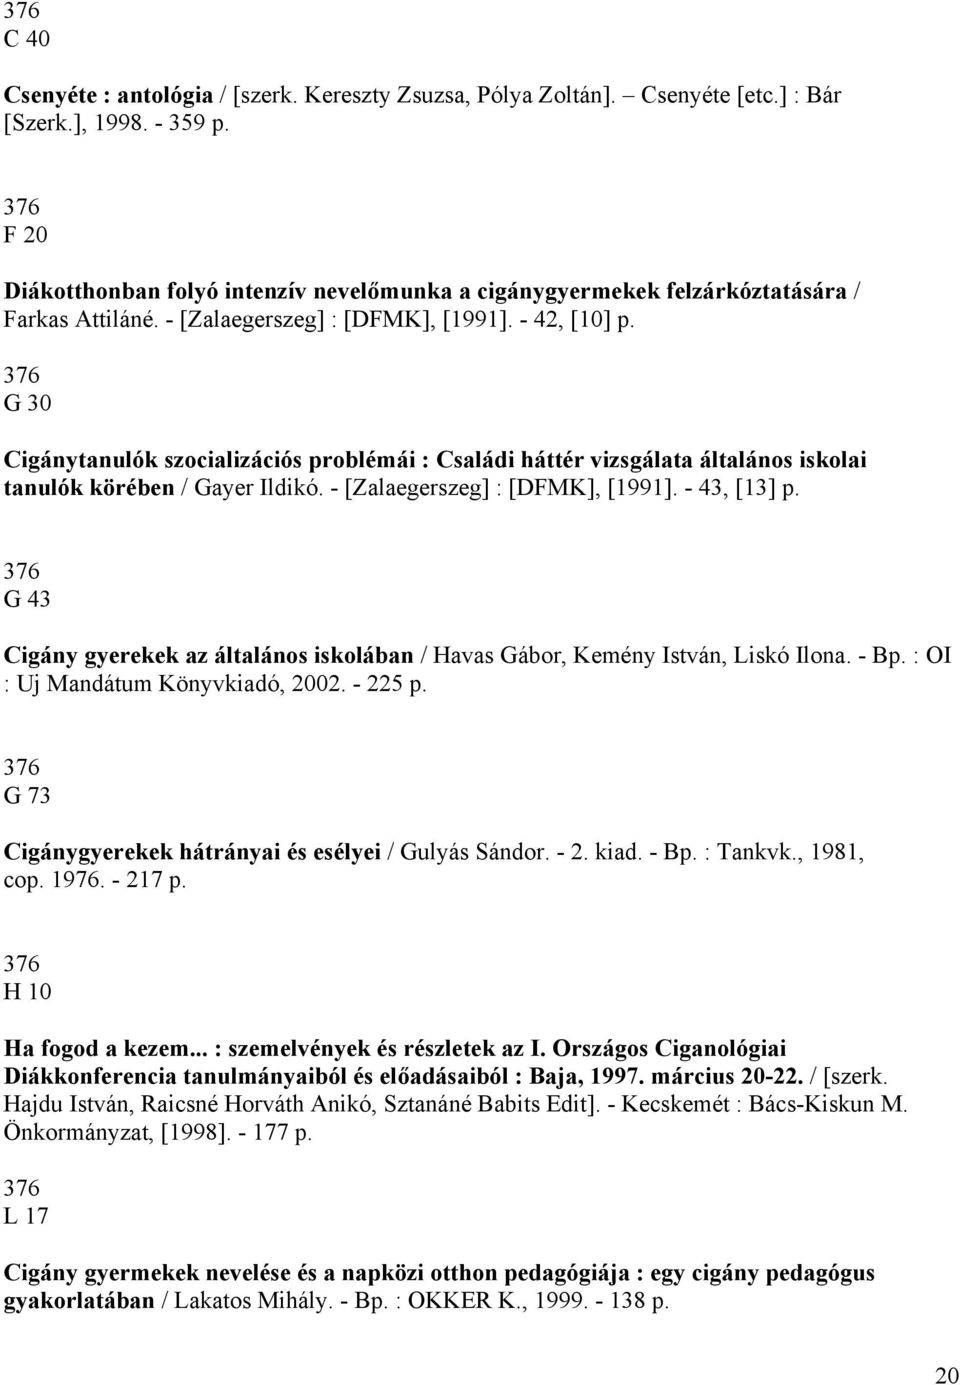 376 G 30 Cigánytanulók szocializációs problémái : Családi háttér vizsgálata általános iskolai tanulók körében / Gayer Ildikó. - [Zalaegerszeg] : [DFMK], [1991]. - 43, [13] p.